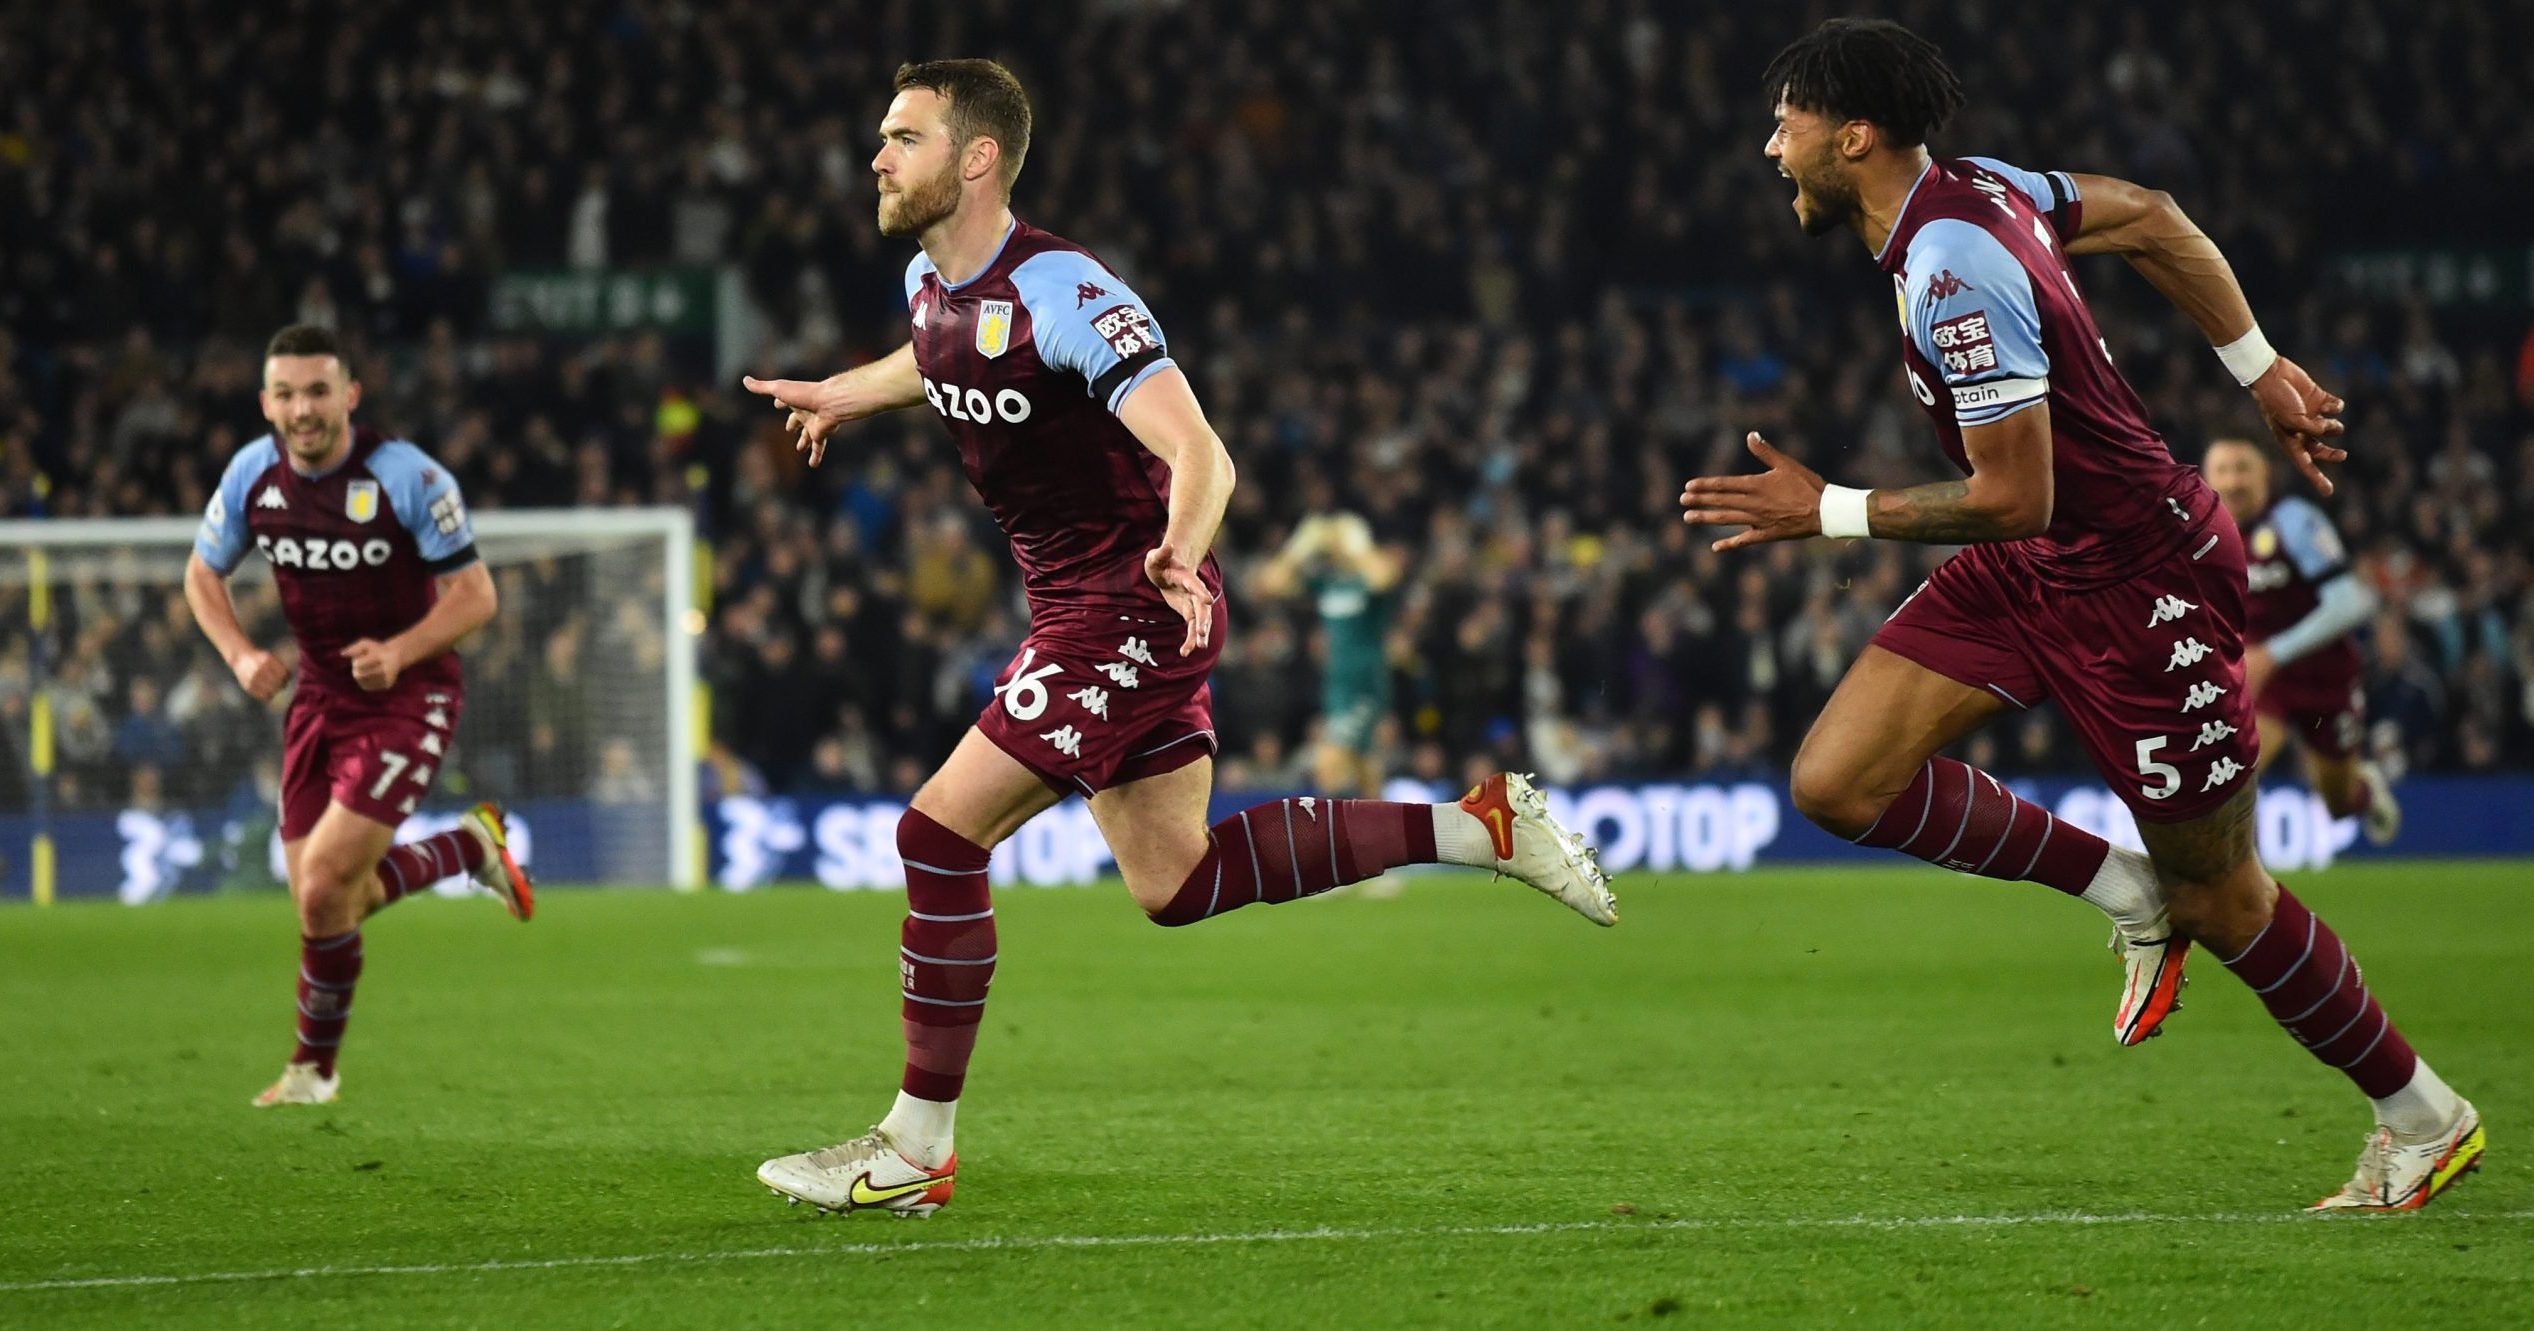 Aston Villa's Calum Chambers celebrates scoring their third goal with teammates